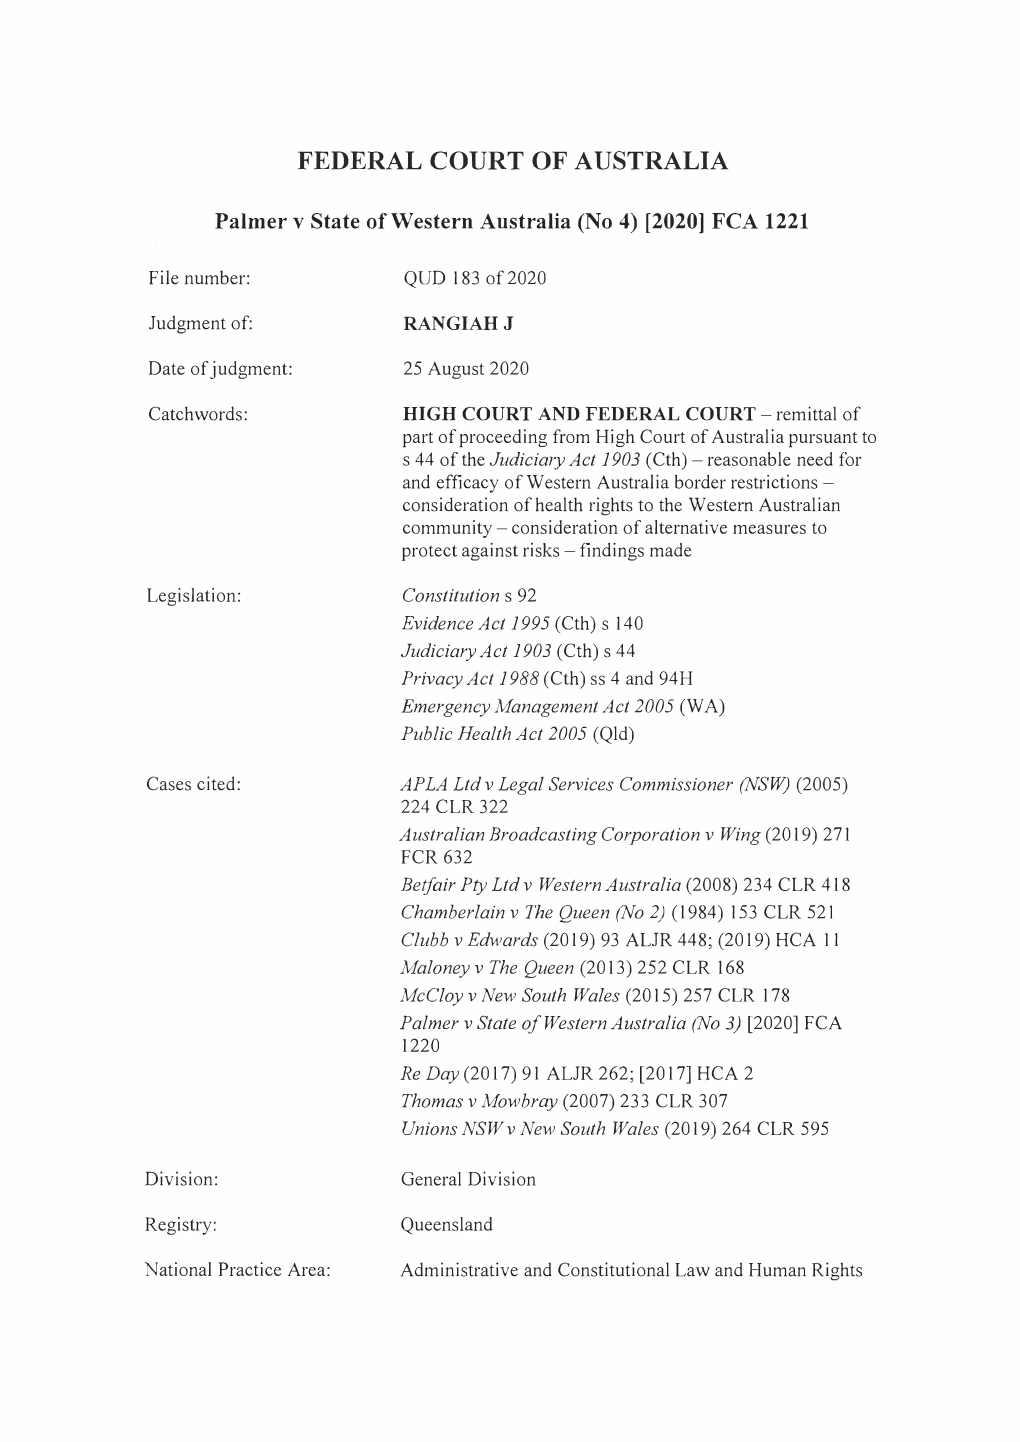 Palmer V State of Western Australia (No 4) [2020] FCA 1221